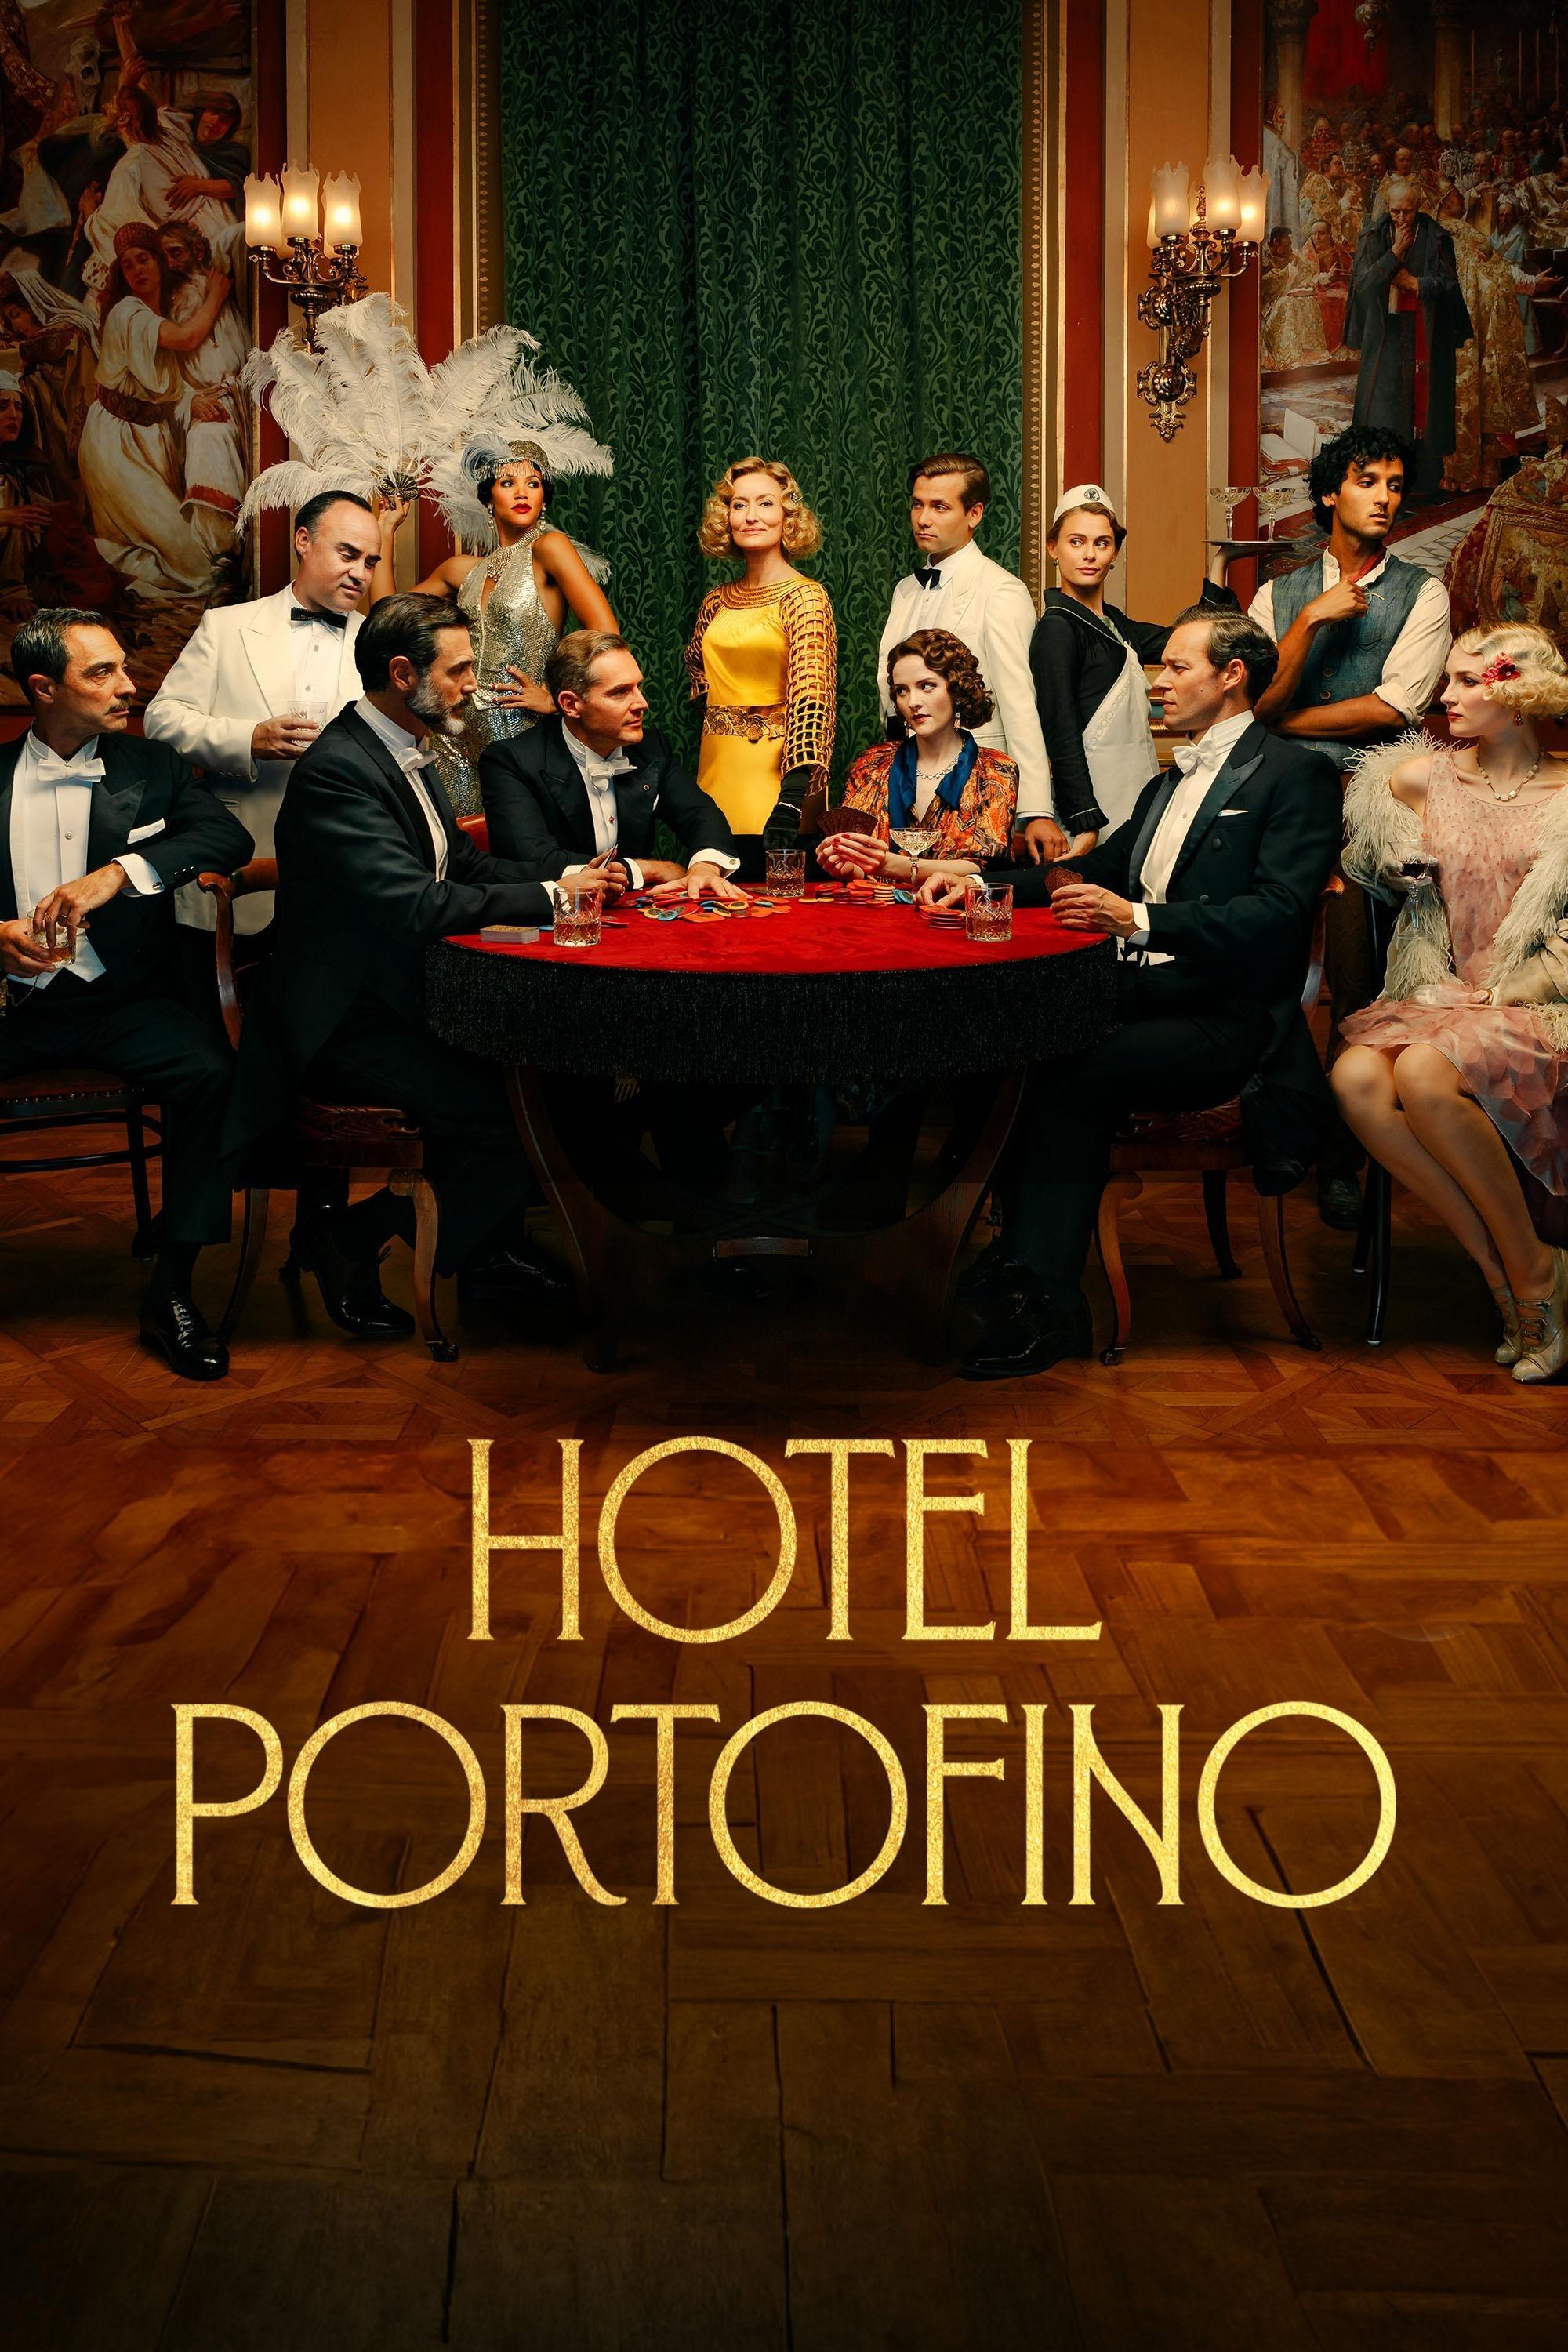 Hotel Portofino Season 3